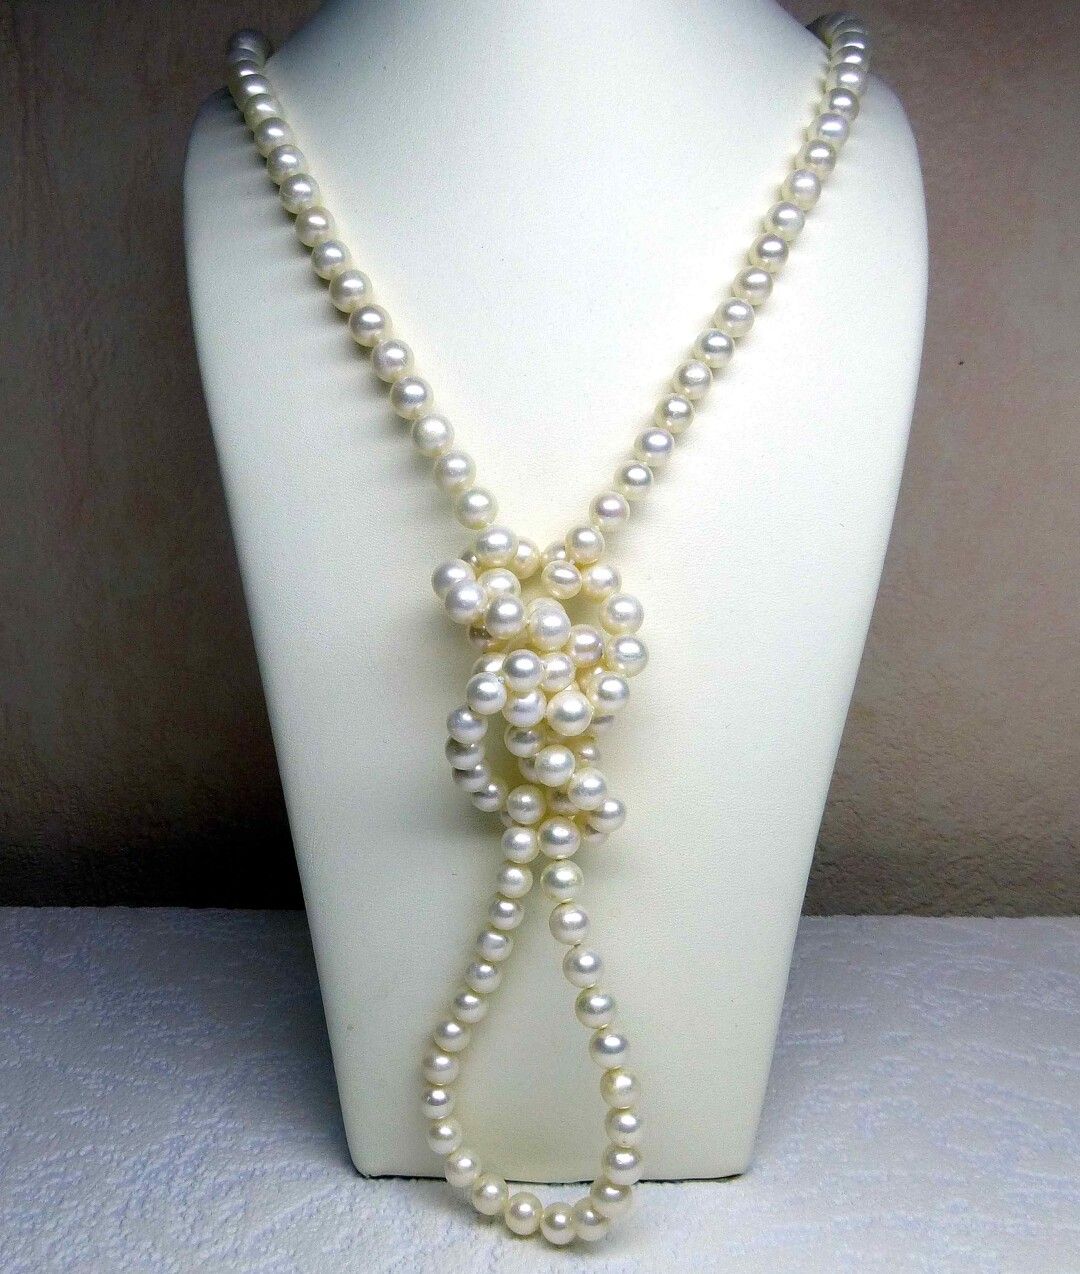 Null 天然养殖珍珠制成的长项链 

直径7-7.5毫米，长度1.20米

(每颗珍珠之间打一个结)